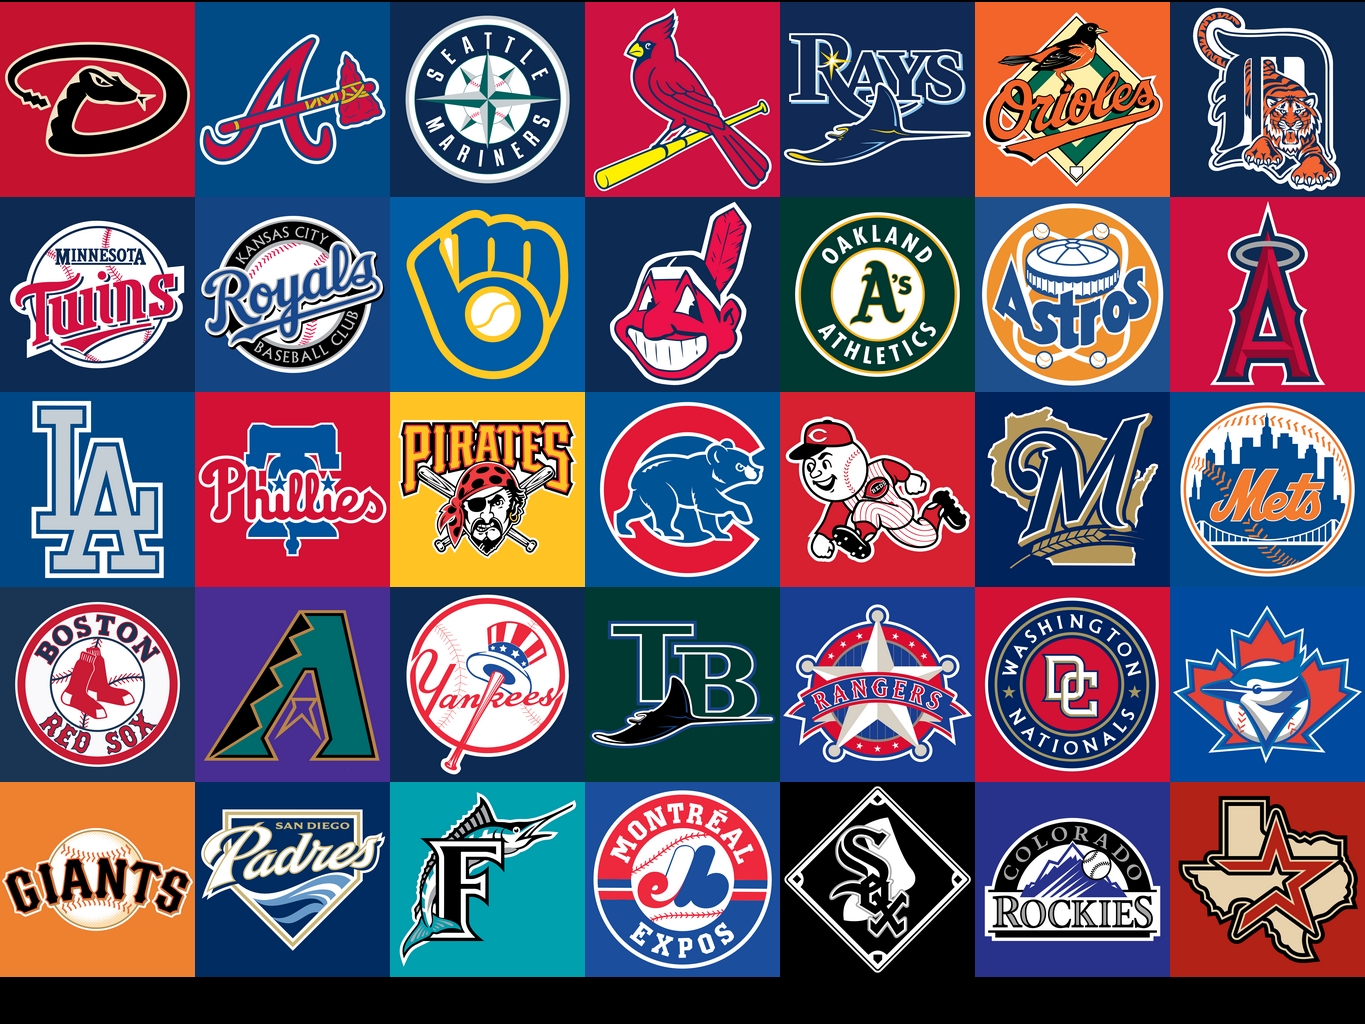 Major League Baseball Logos (MLB)